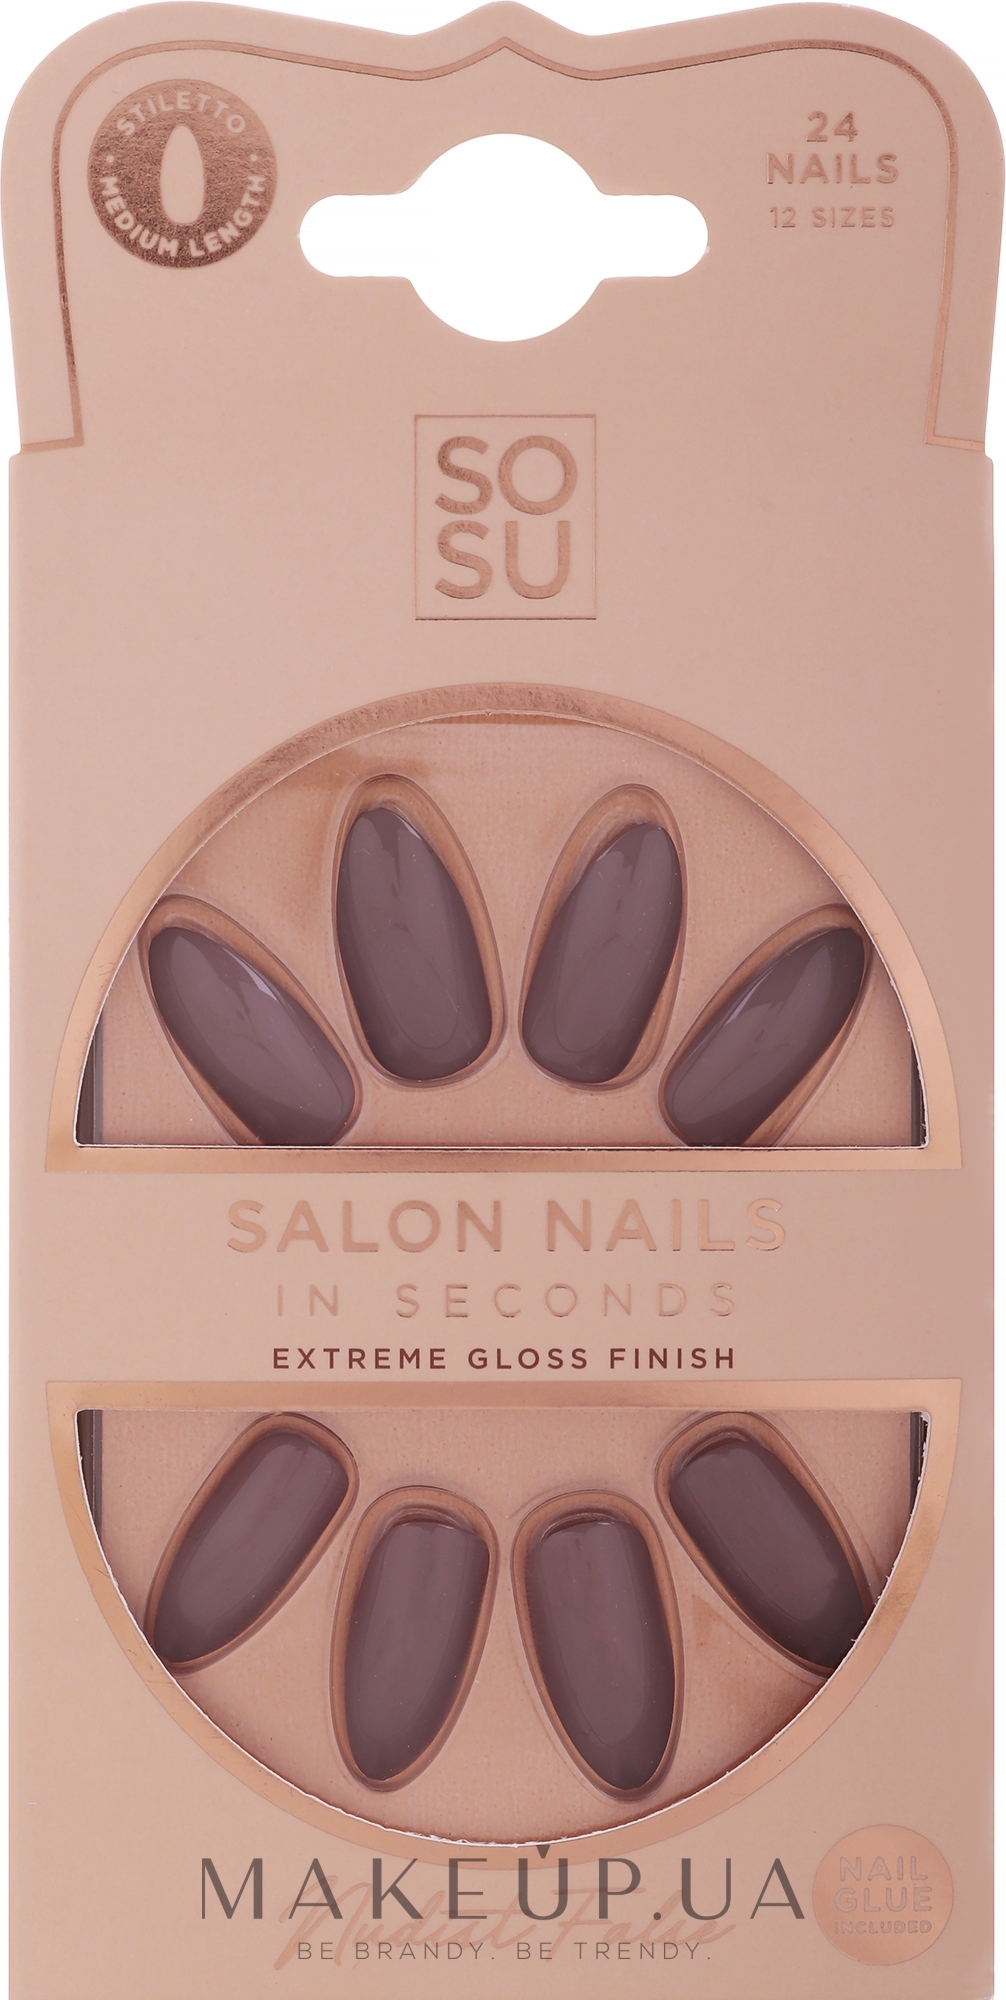 Набор накладных ногтей - Sosu by SJ False Nails Medium Stiletto Nudist — фото 24шт